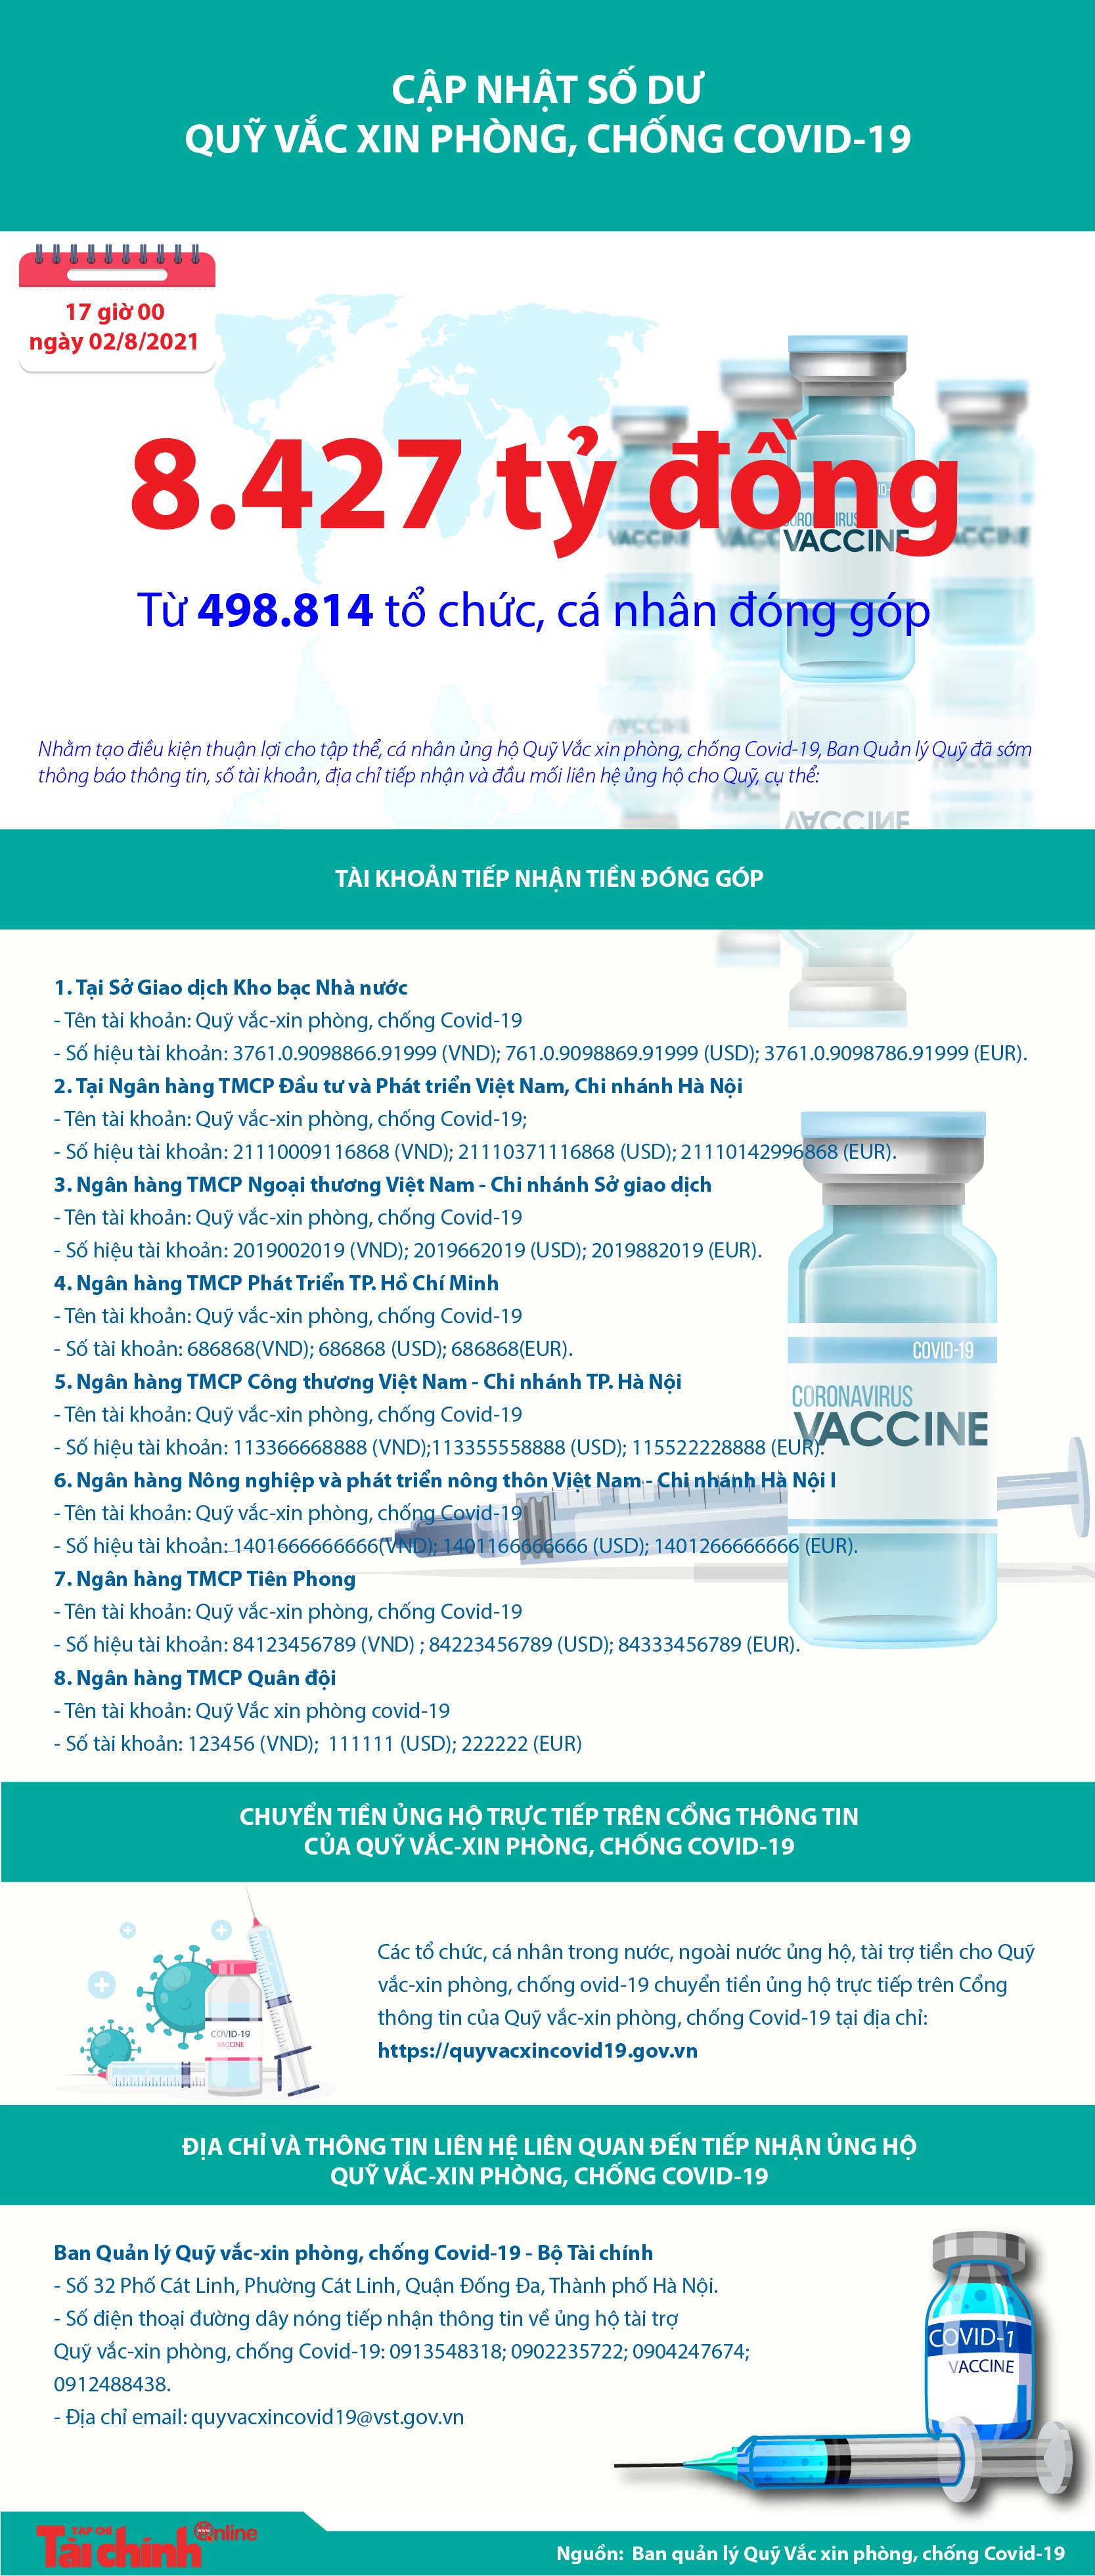 [Infographics] Quỹ Vắc xin phòng, chống COVID-19 đã tiếp nhận ủng hộ 8.427 tỷ đồng - Ảnh 1